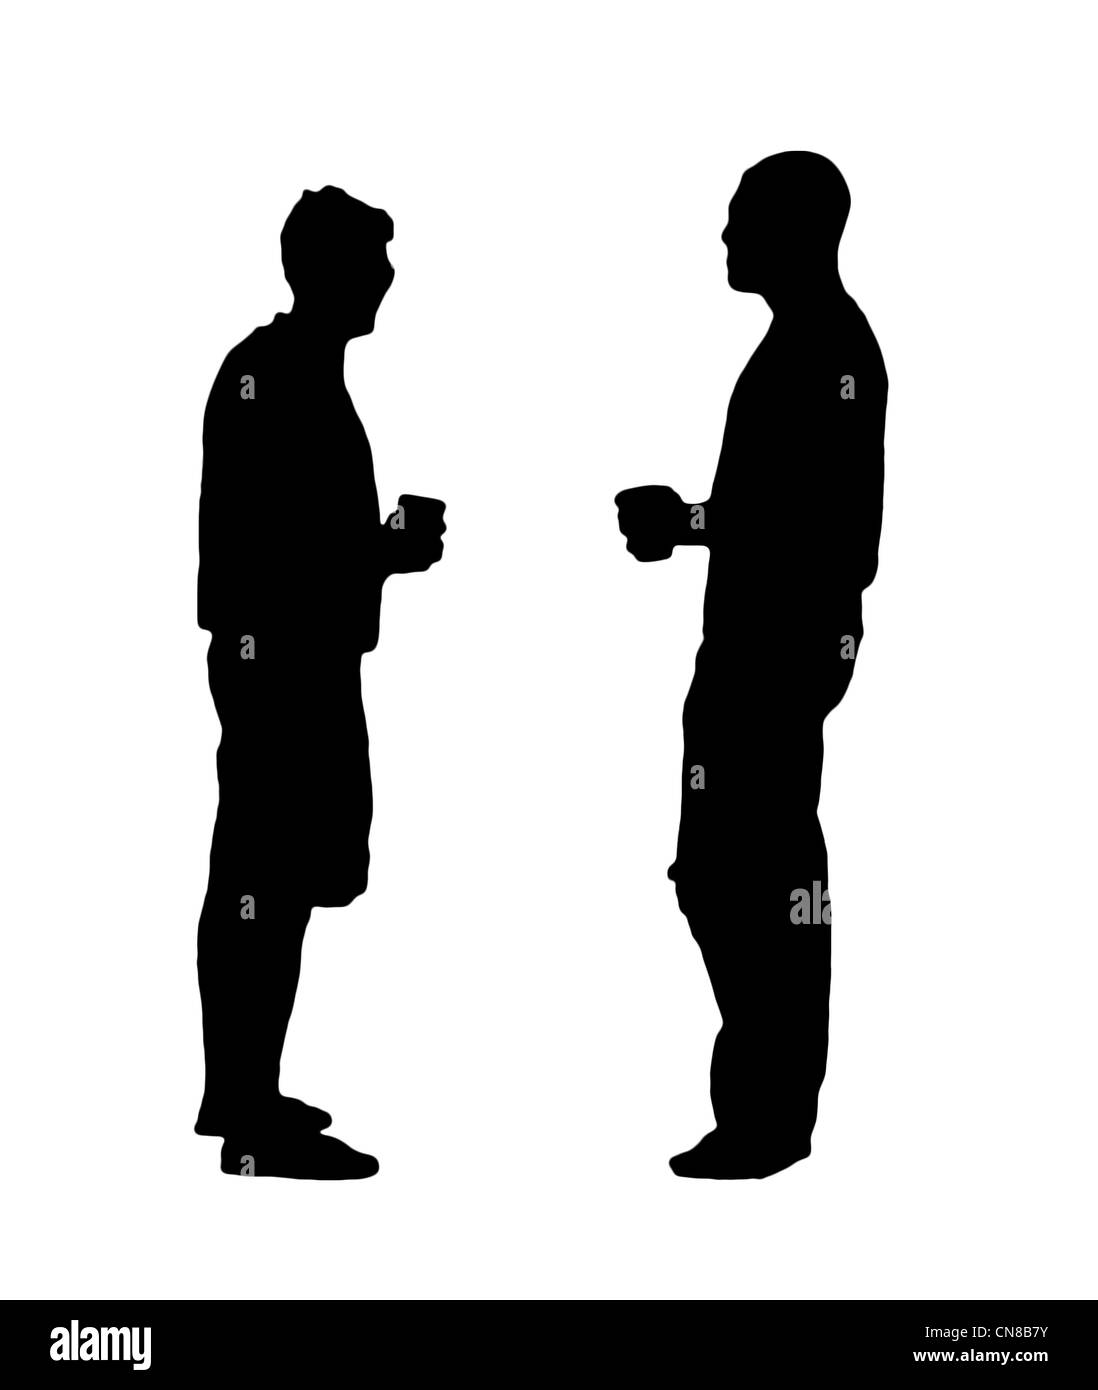 Une silhouette en noir et blanc de deux hommes buvant de la bière. Banque D'Images